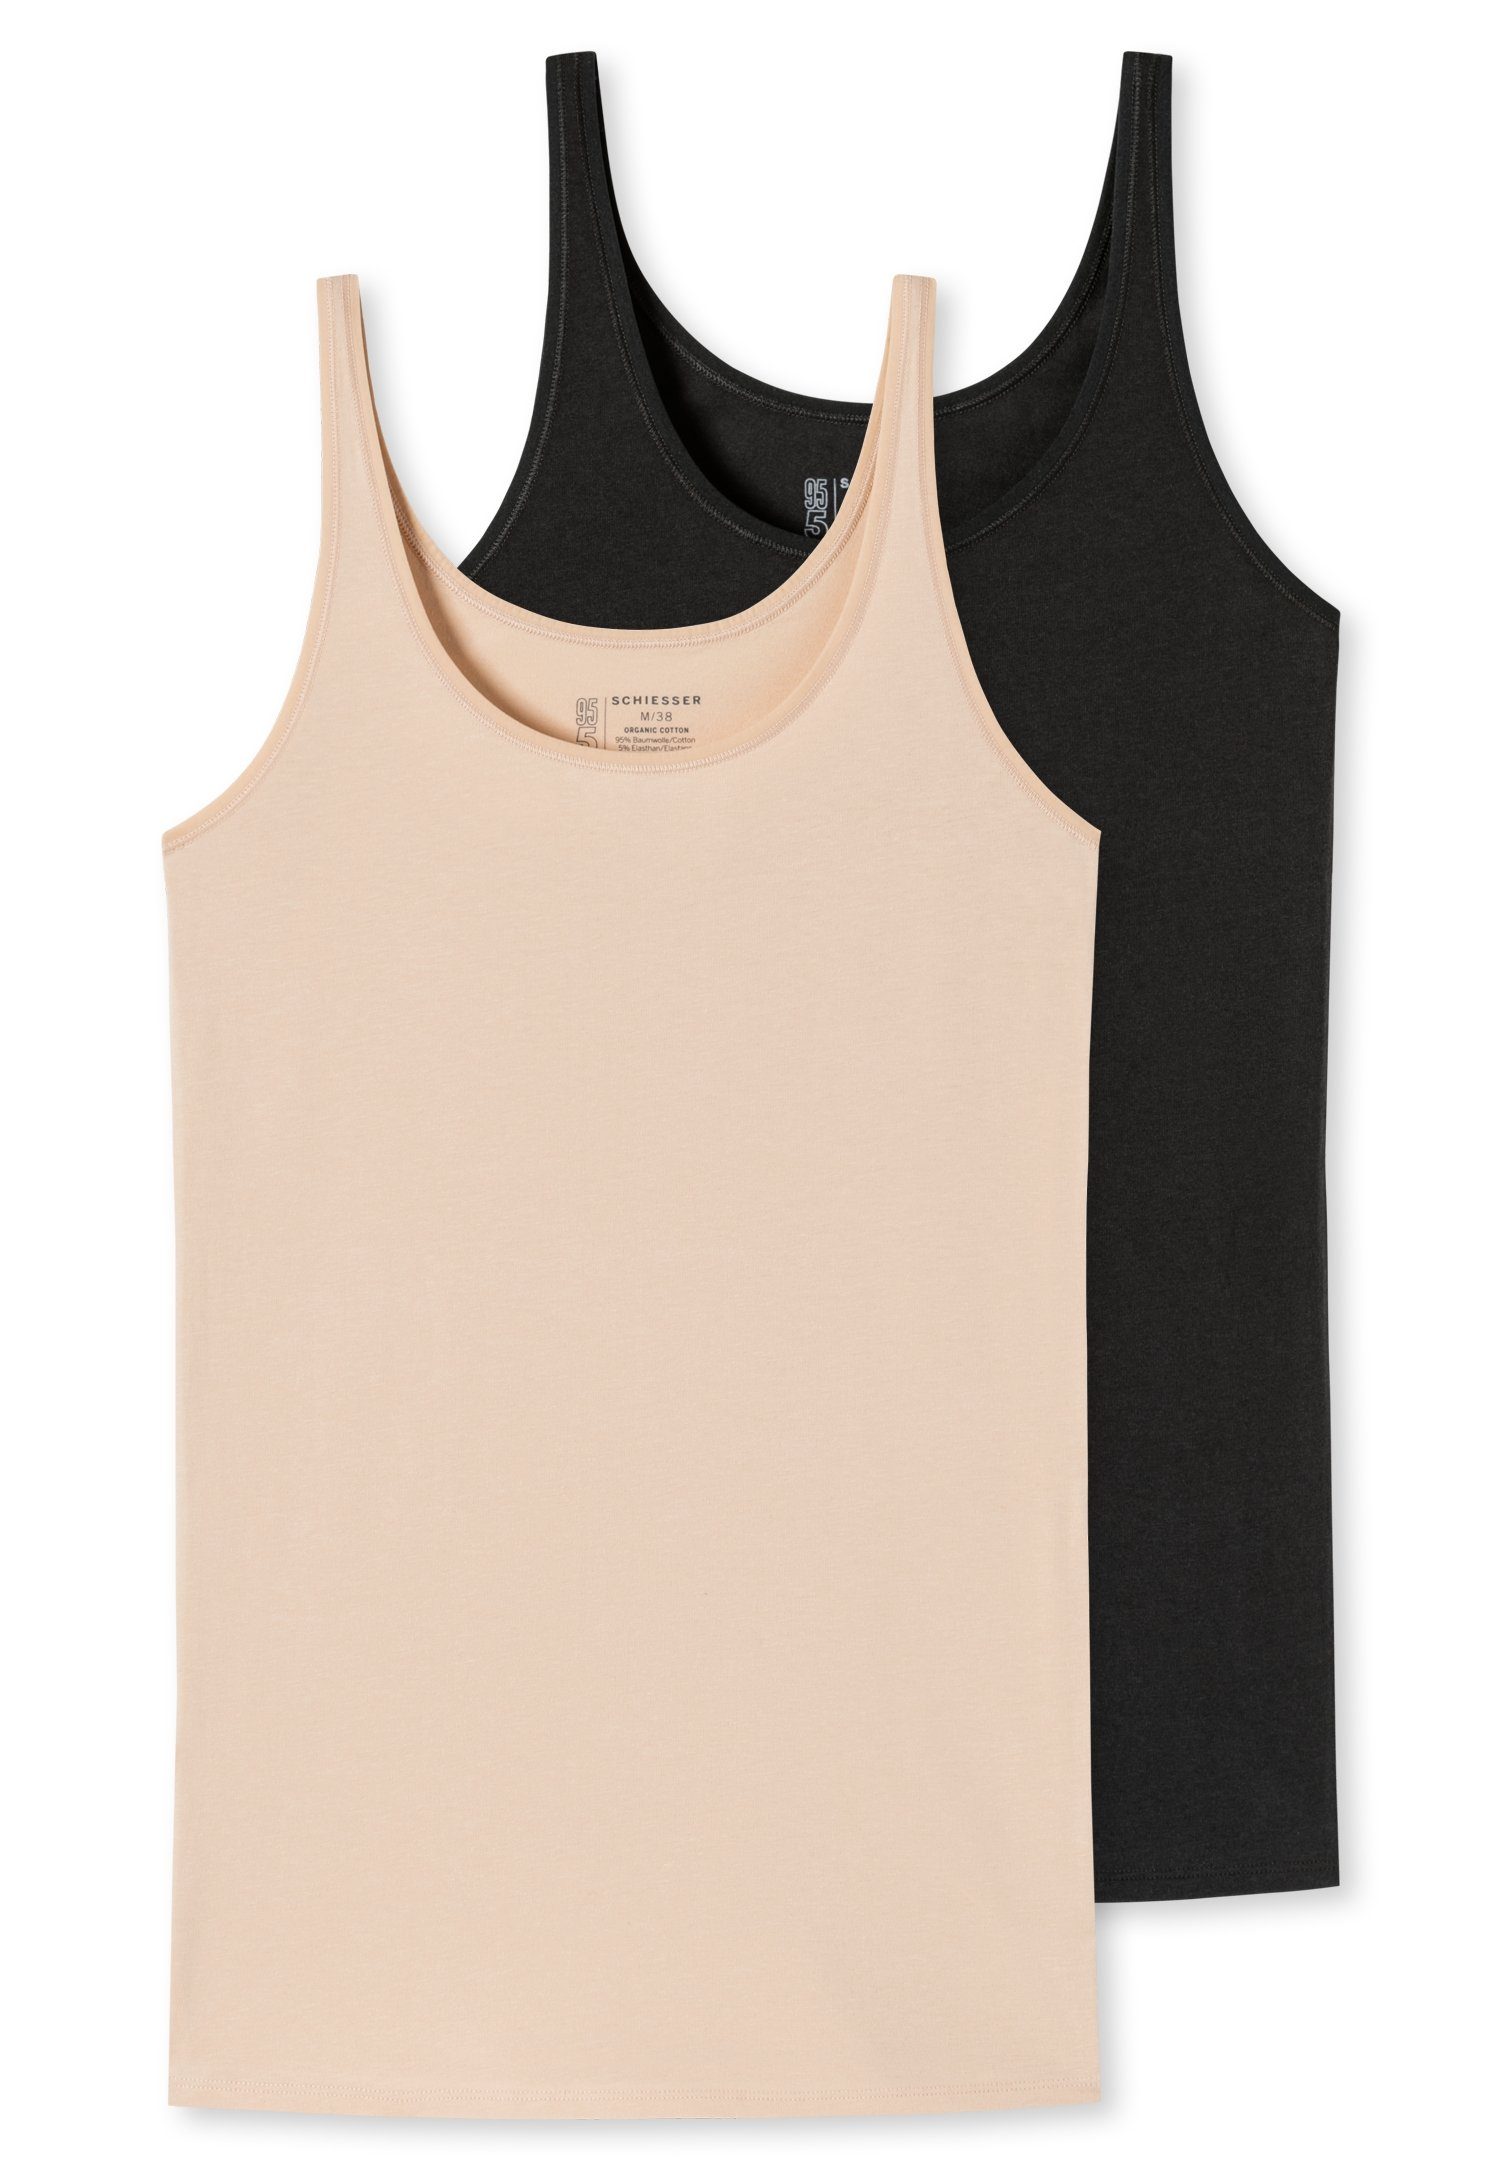 Schiesser Unterhemd (2er-Pack) mit elastischer Single-Jersey-Qualität schwarz/sand